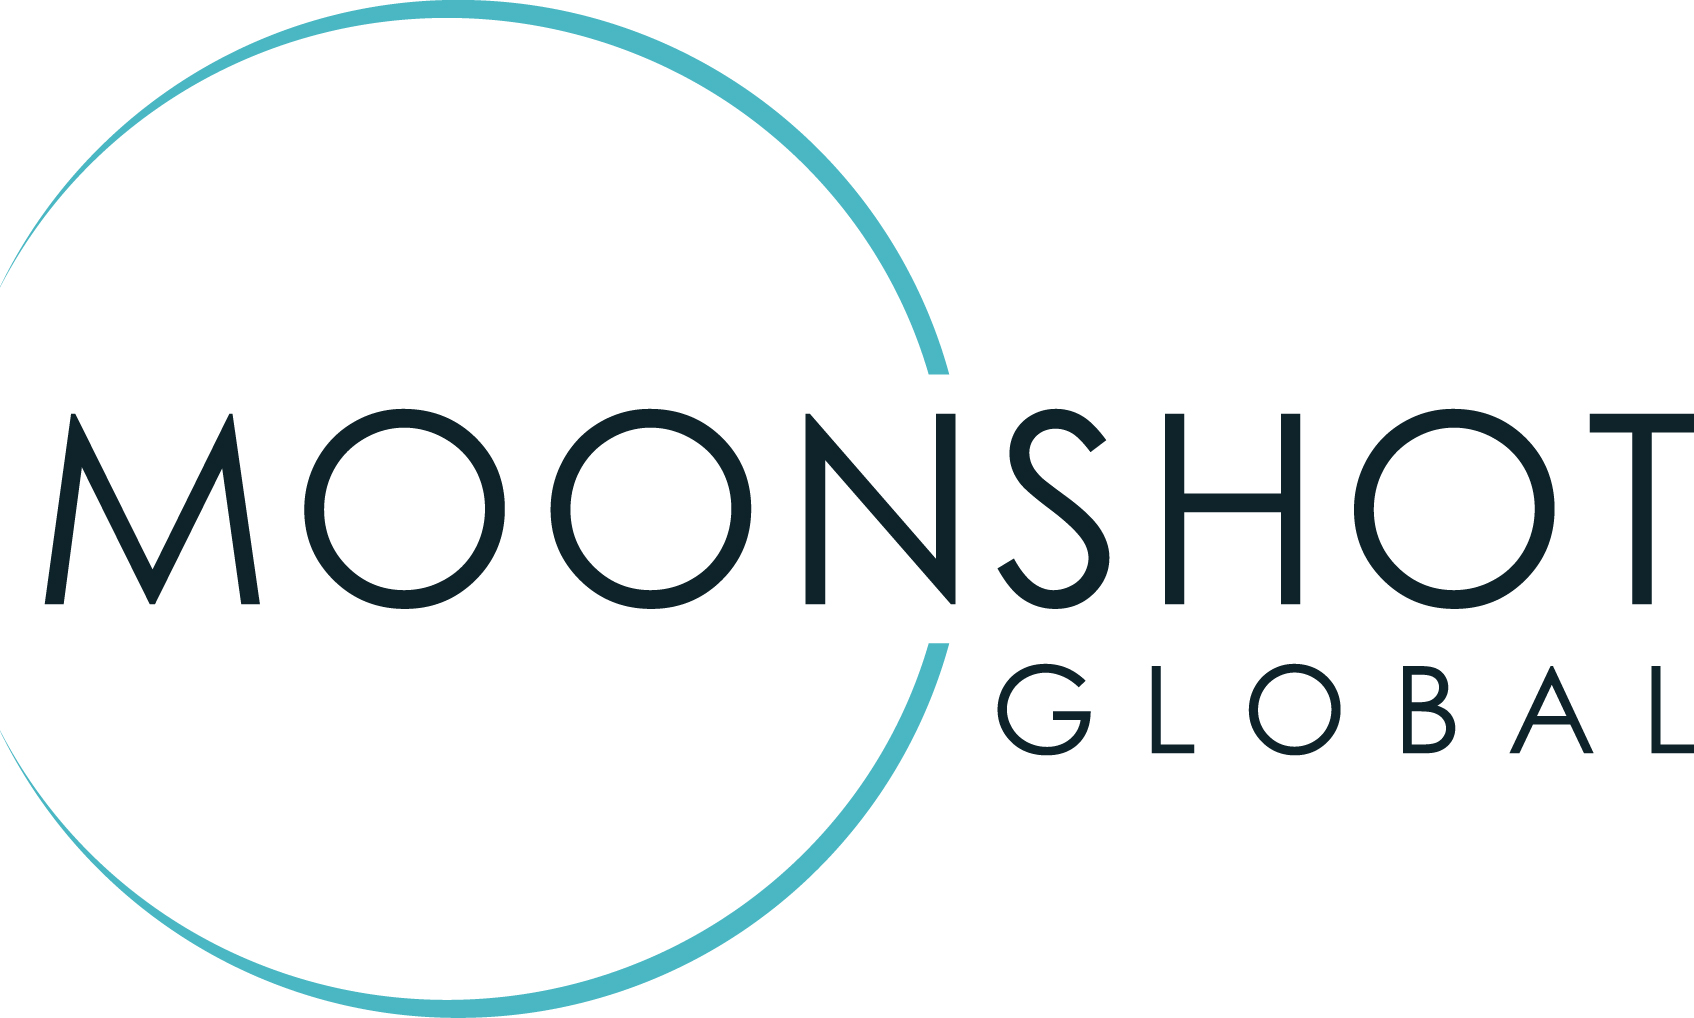 Moonshot Global LLC